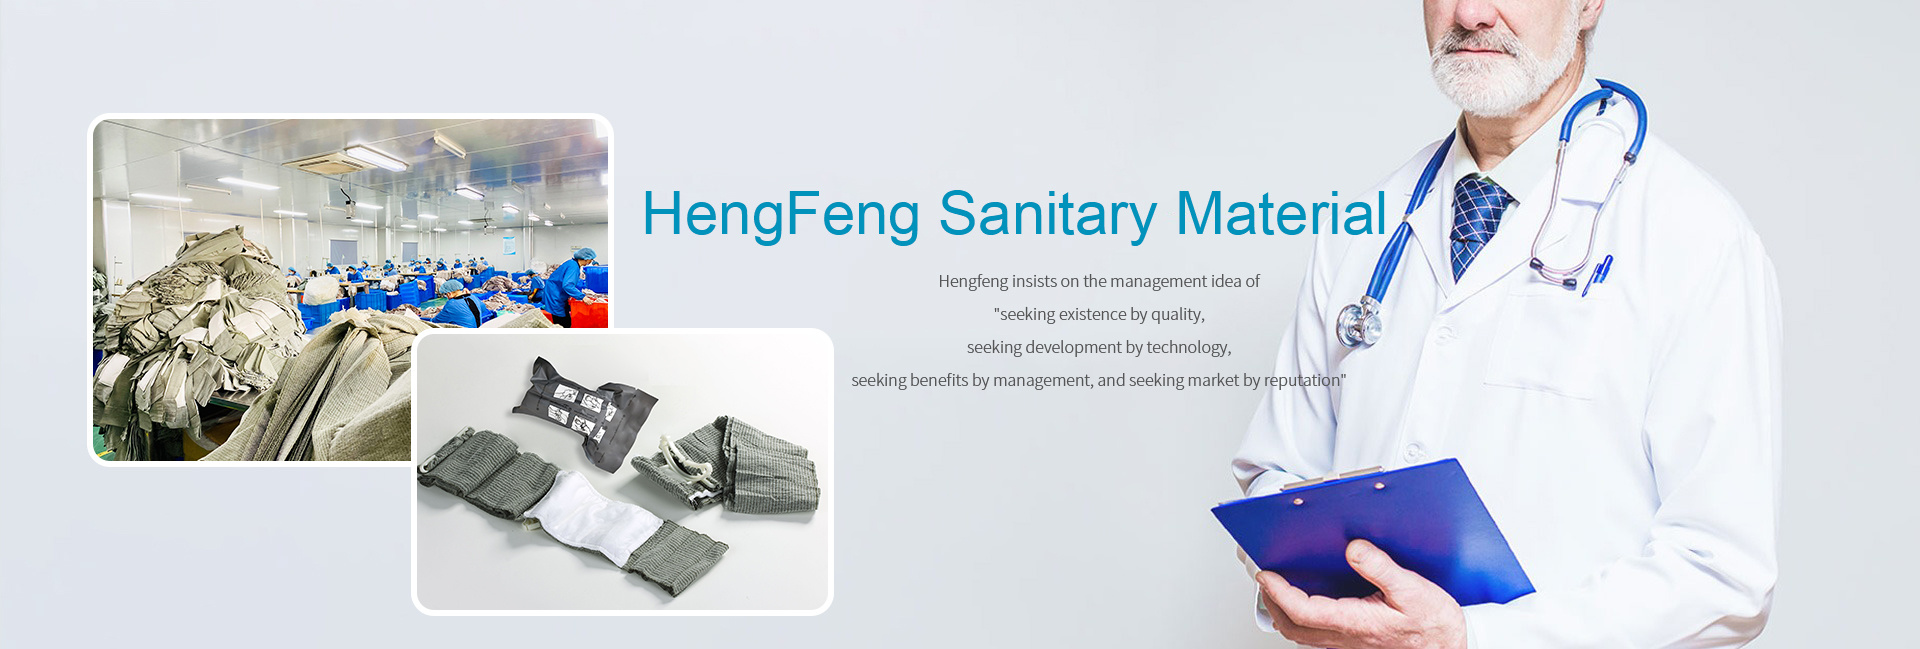 HengFeng Sanitary